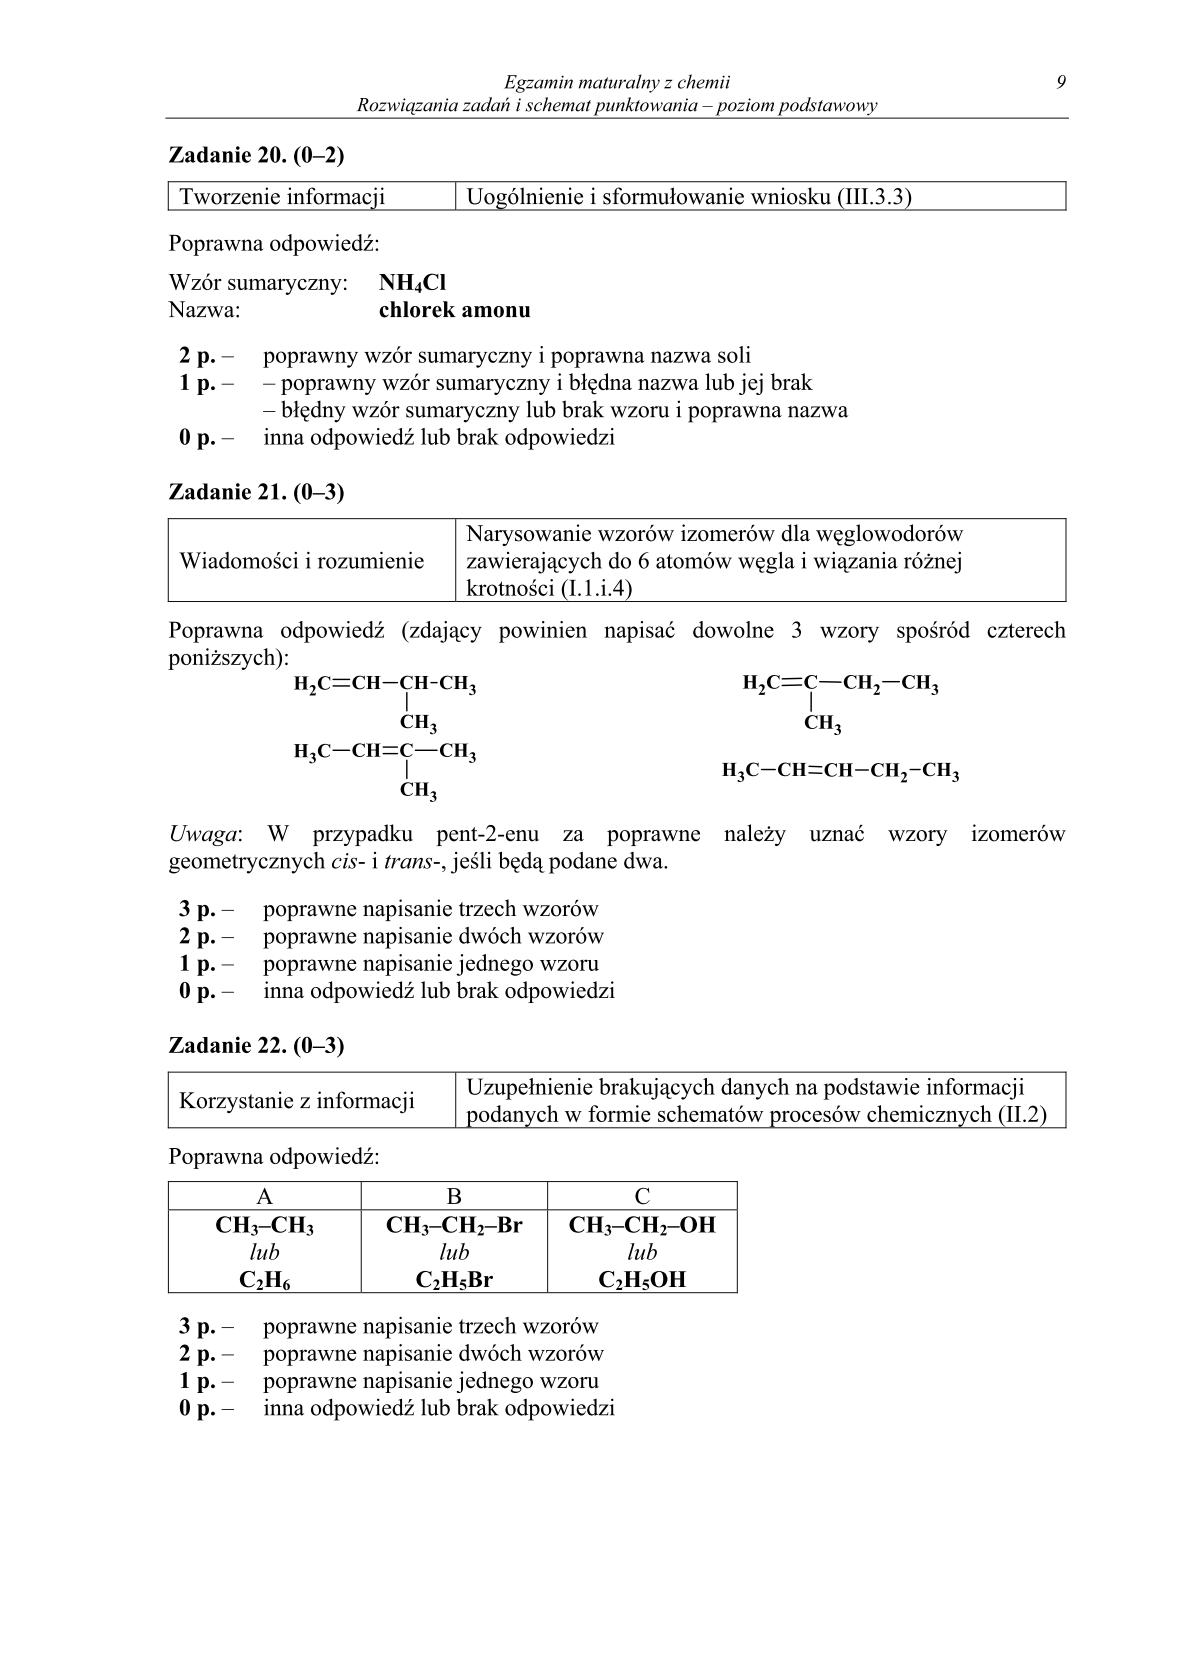 odpowiedzi-chemia-poziom-podstawowy-matura-2014-str.9